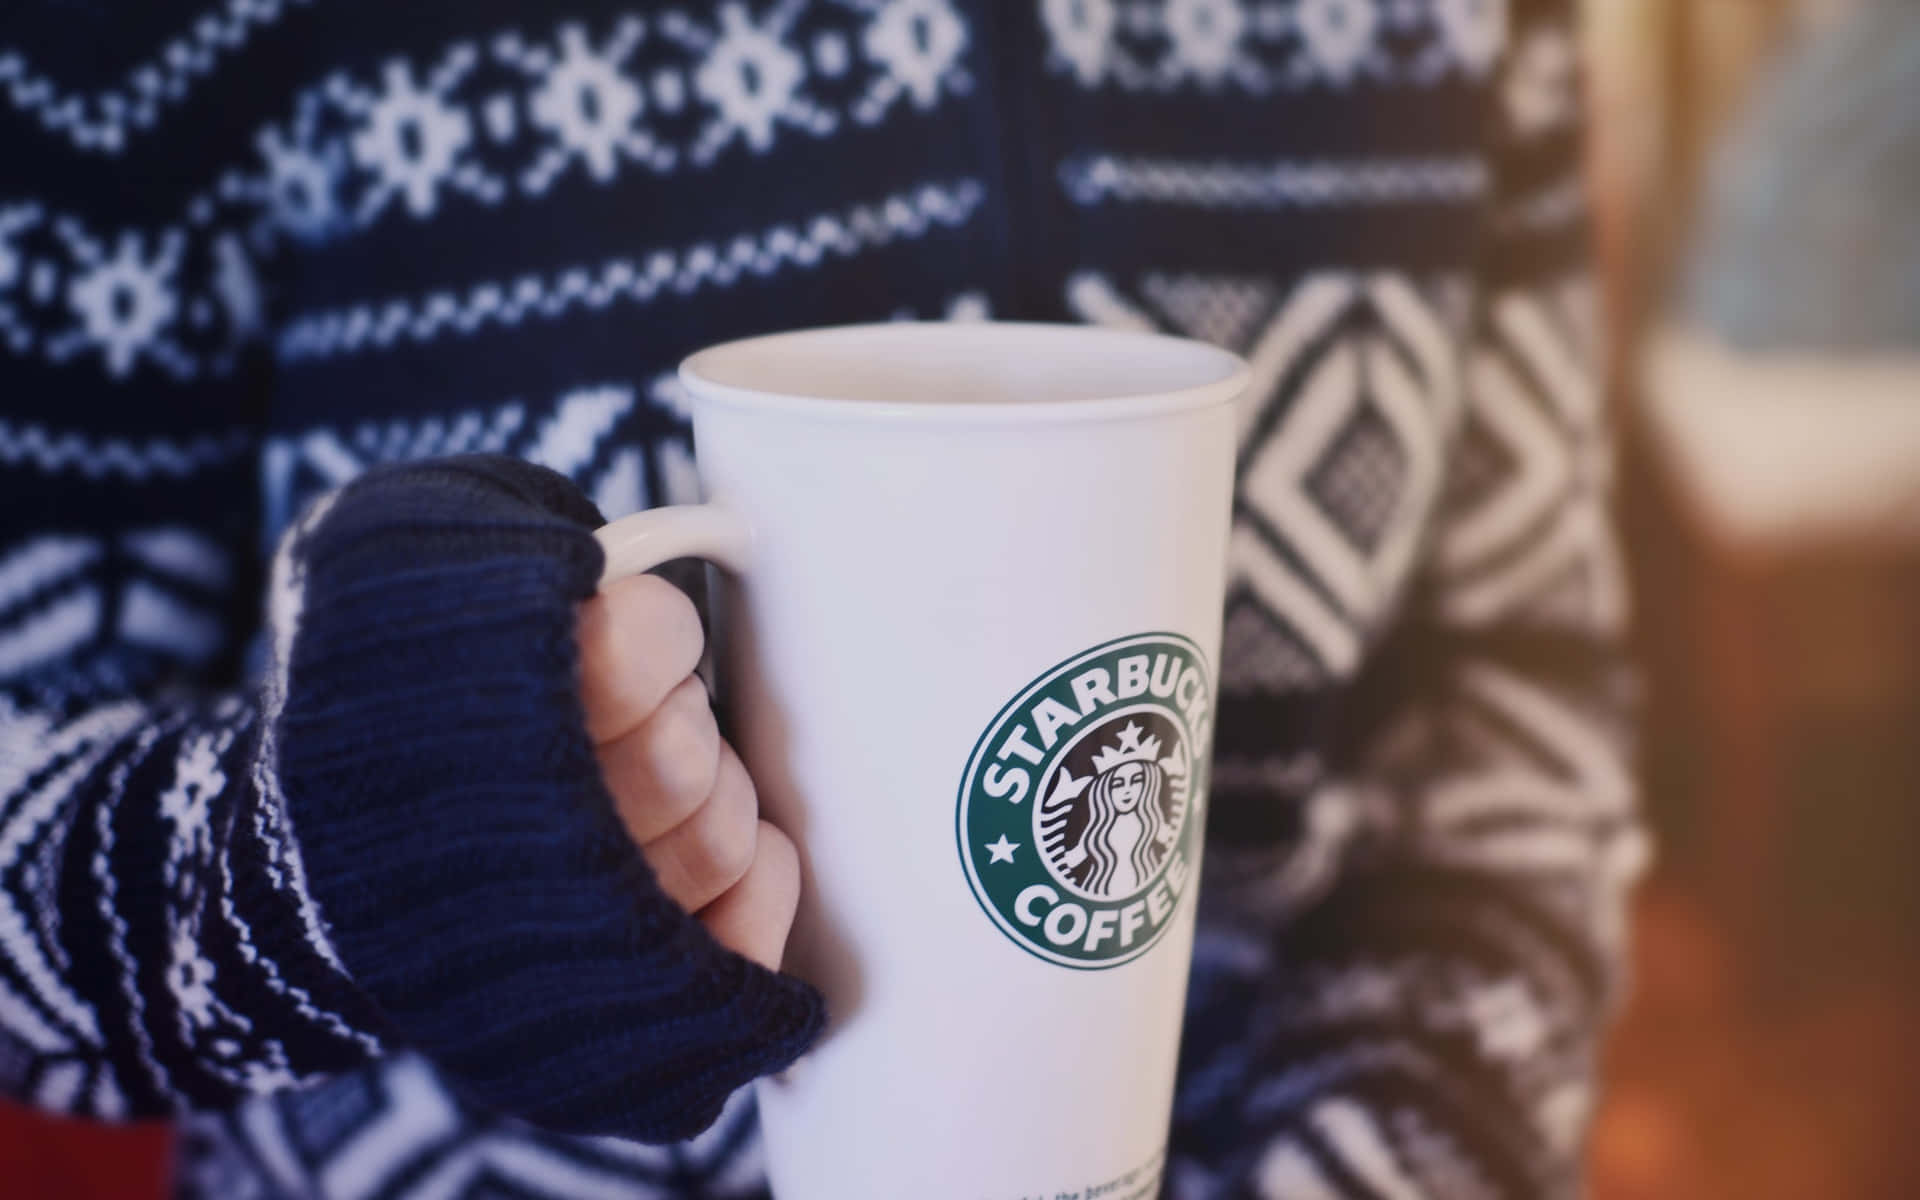 Genießensie Eine Warme Tasse Kaffee Bei Starbucks.